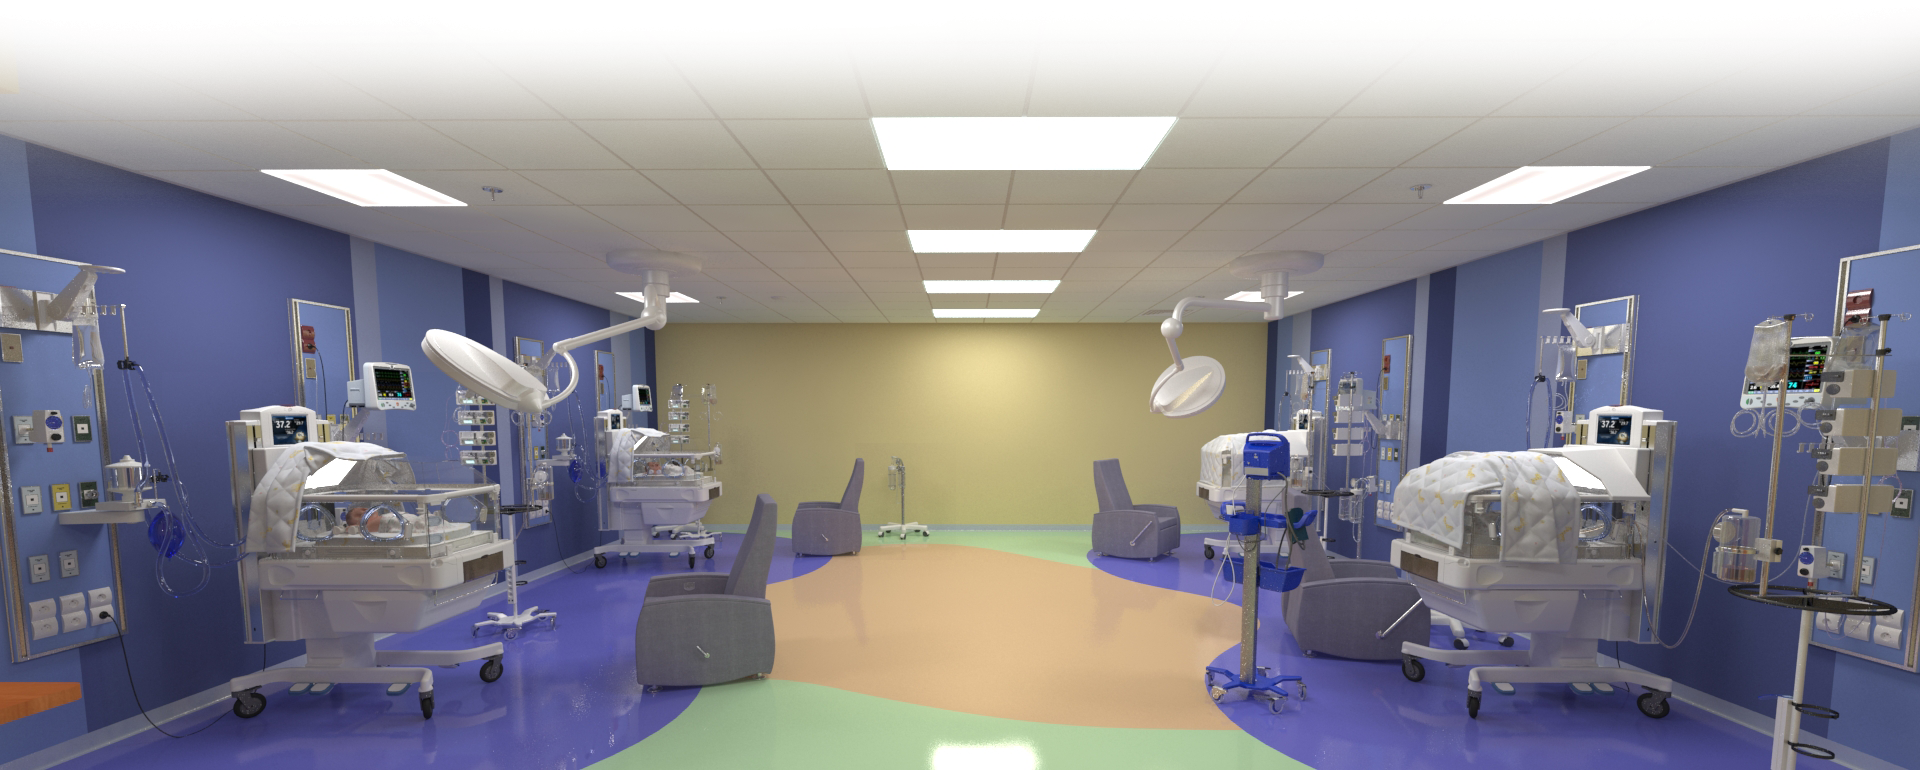 Salle Neonatal_hopital_3D_Image et Process